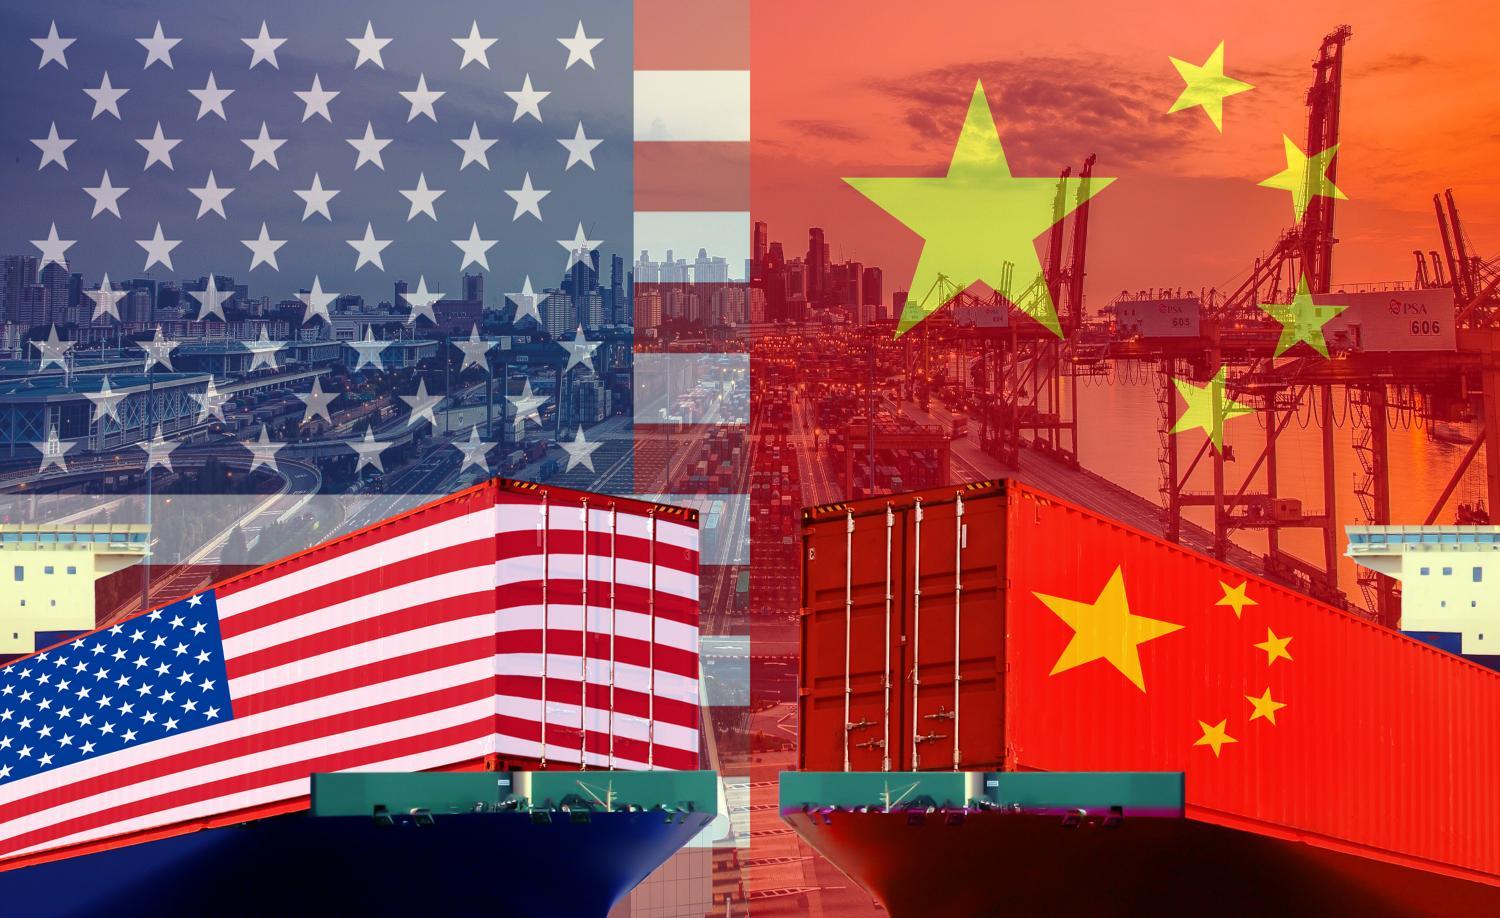 Kinh tế Mỹ và Trung Quốc phụ thuộc vào nhau tới mức độ nào? 5 biểu đồ sau sẽ giải đáp.